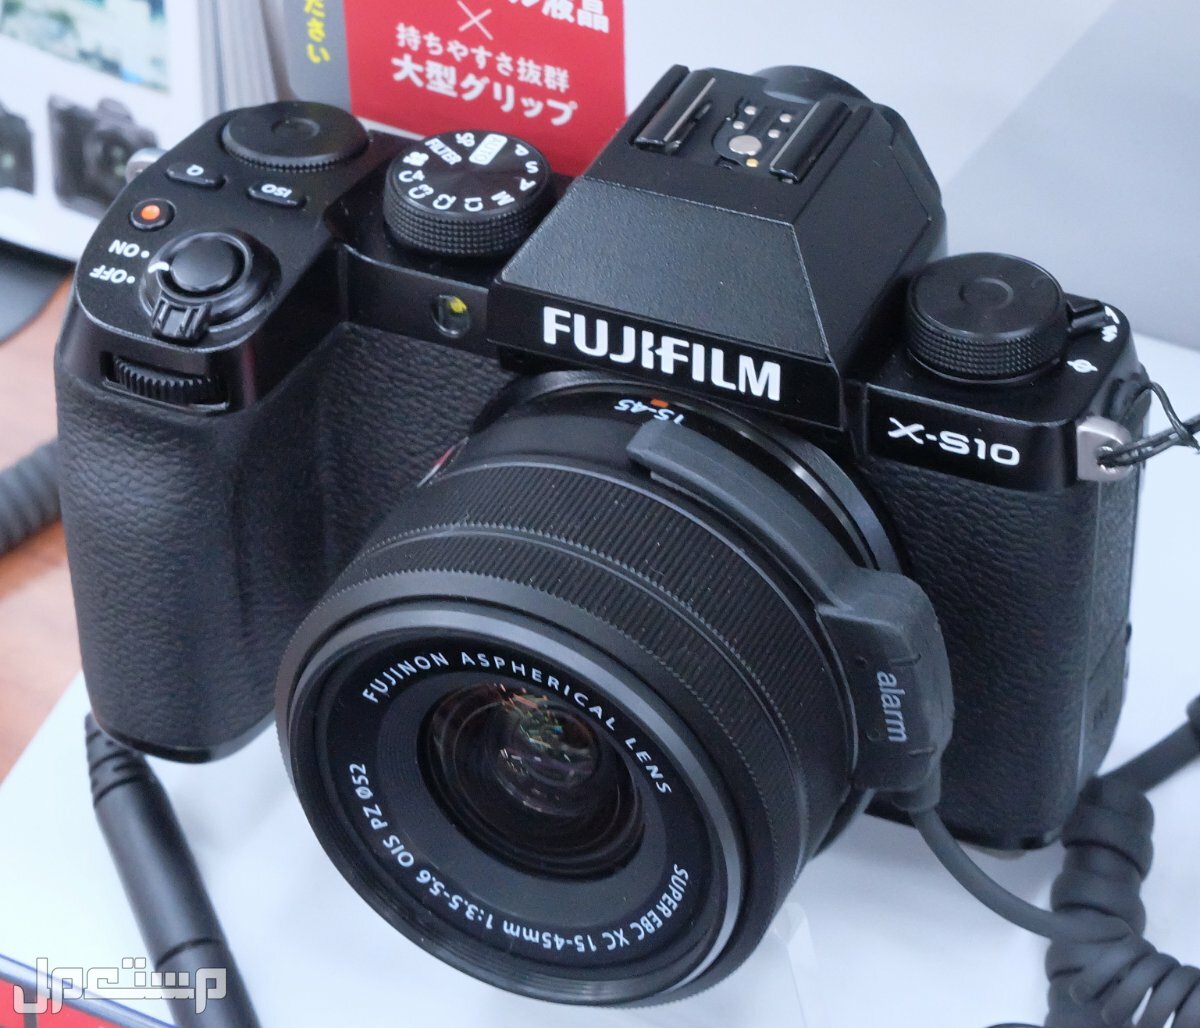 مواصفات ومميزات وعيوب كاميرات التصوير فوجي فيلم في البحرين مواصفات كاميرا Fujifilm X-S10